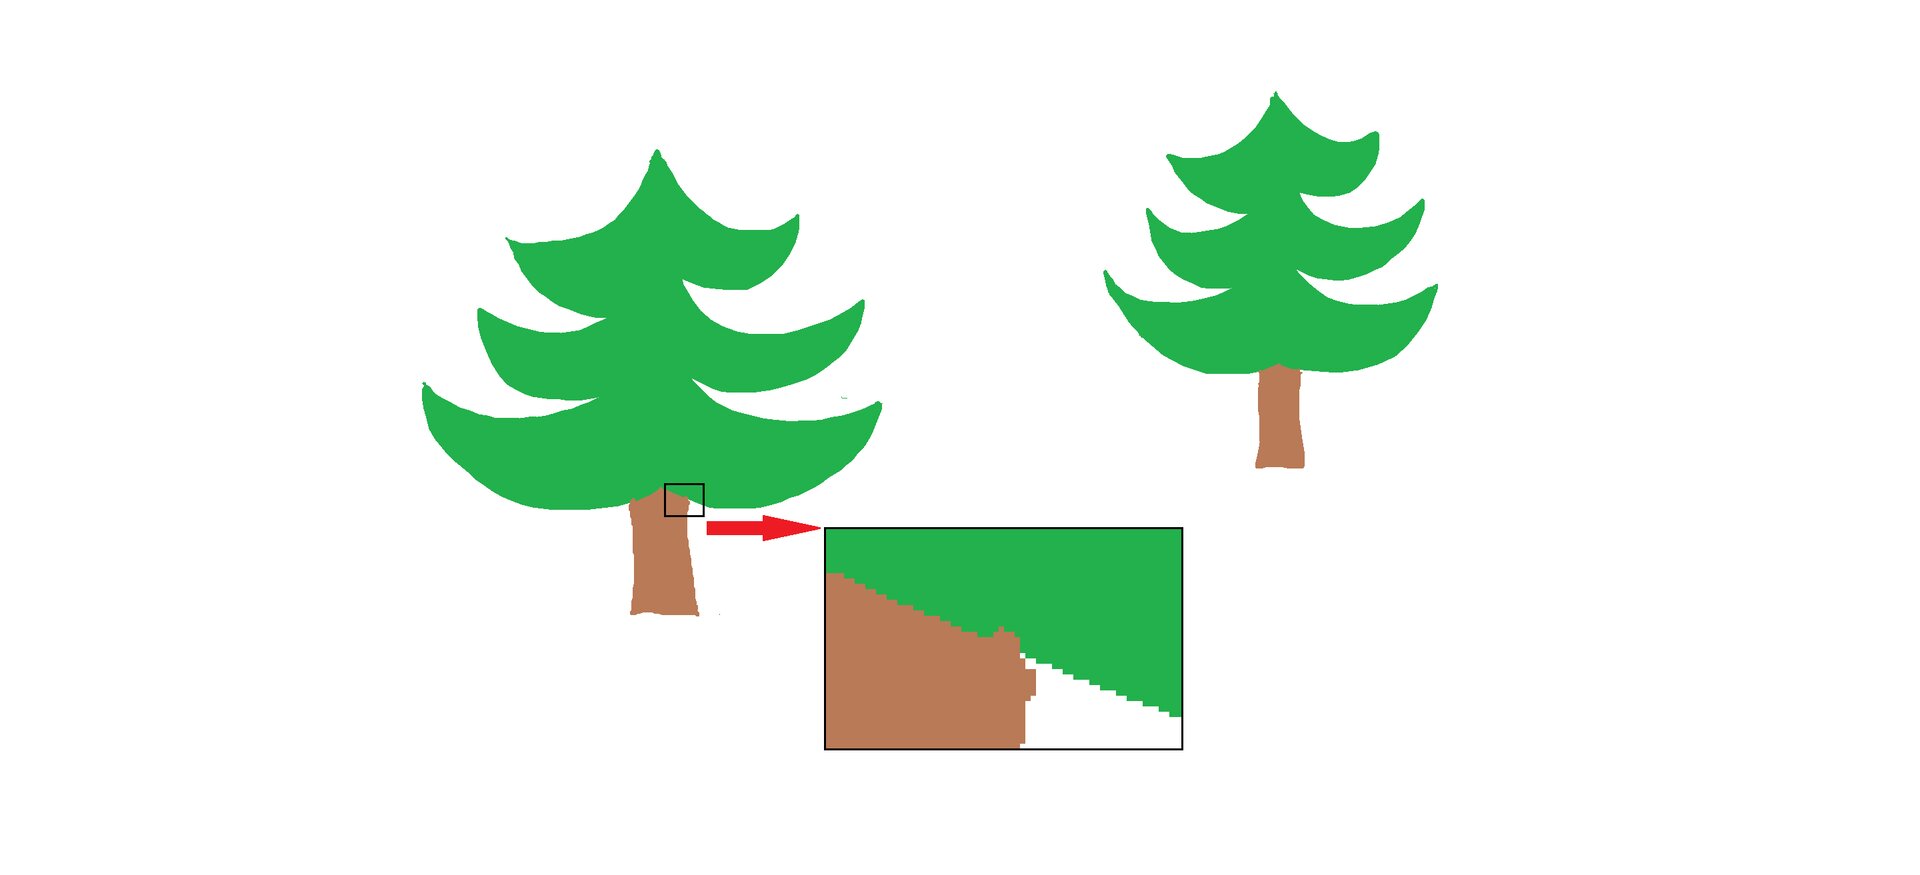 Ilustracja przedstawia dwie choinki wypełnione kolorem. Pień ma inny kolor niż korona. Na ilustracji znajduje się powiększony fragment rysunku z widocznymi pikselami. Nierówna kreska w powiększeniu spowodowała, że pień drzewa nienaturalnie wystaje poza swoje granice. 